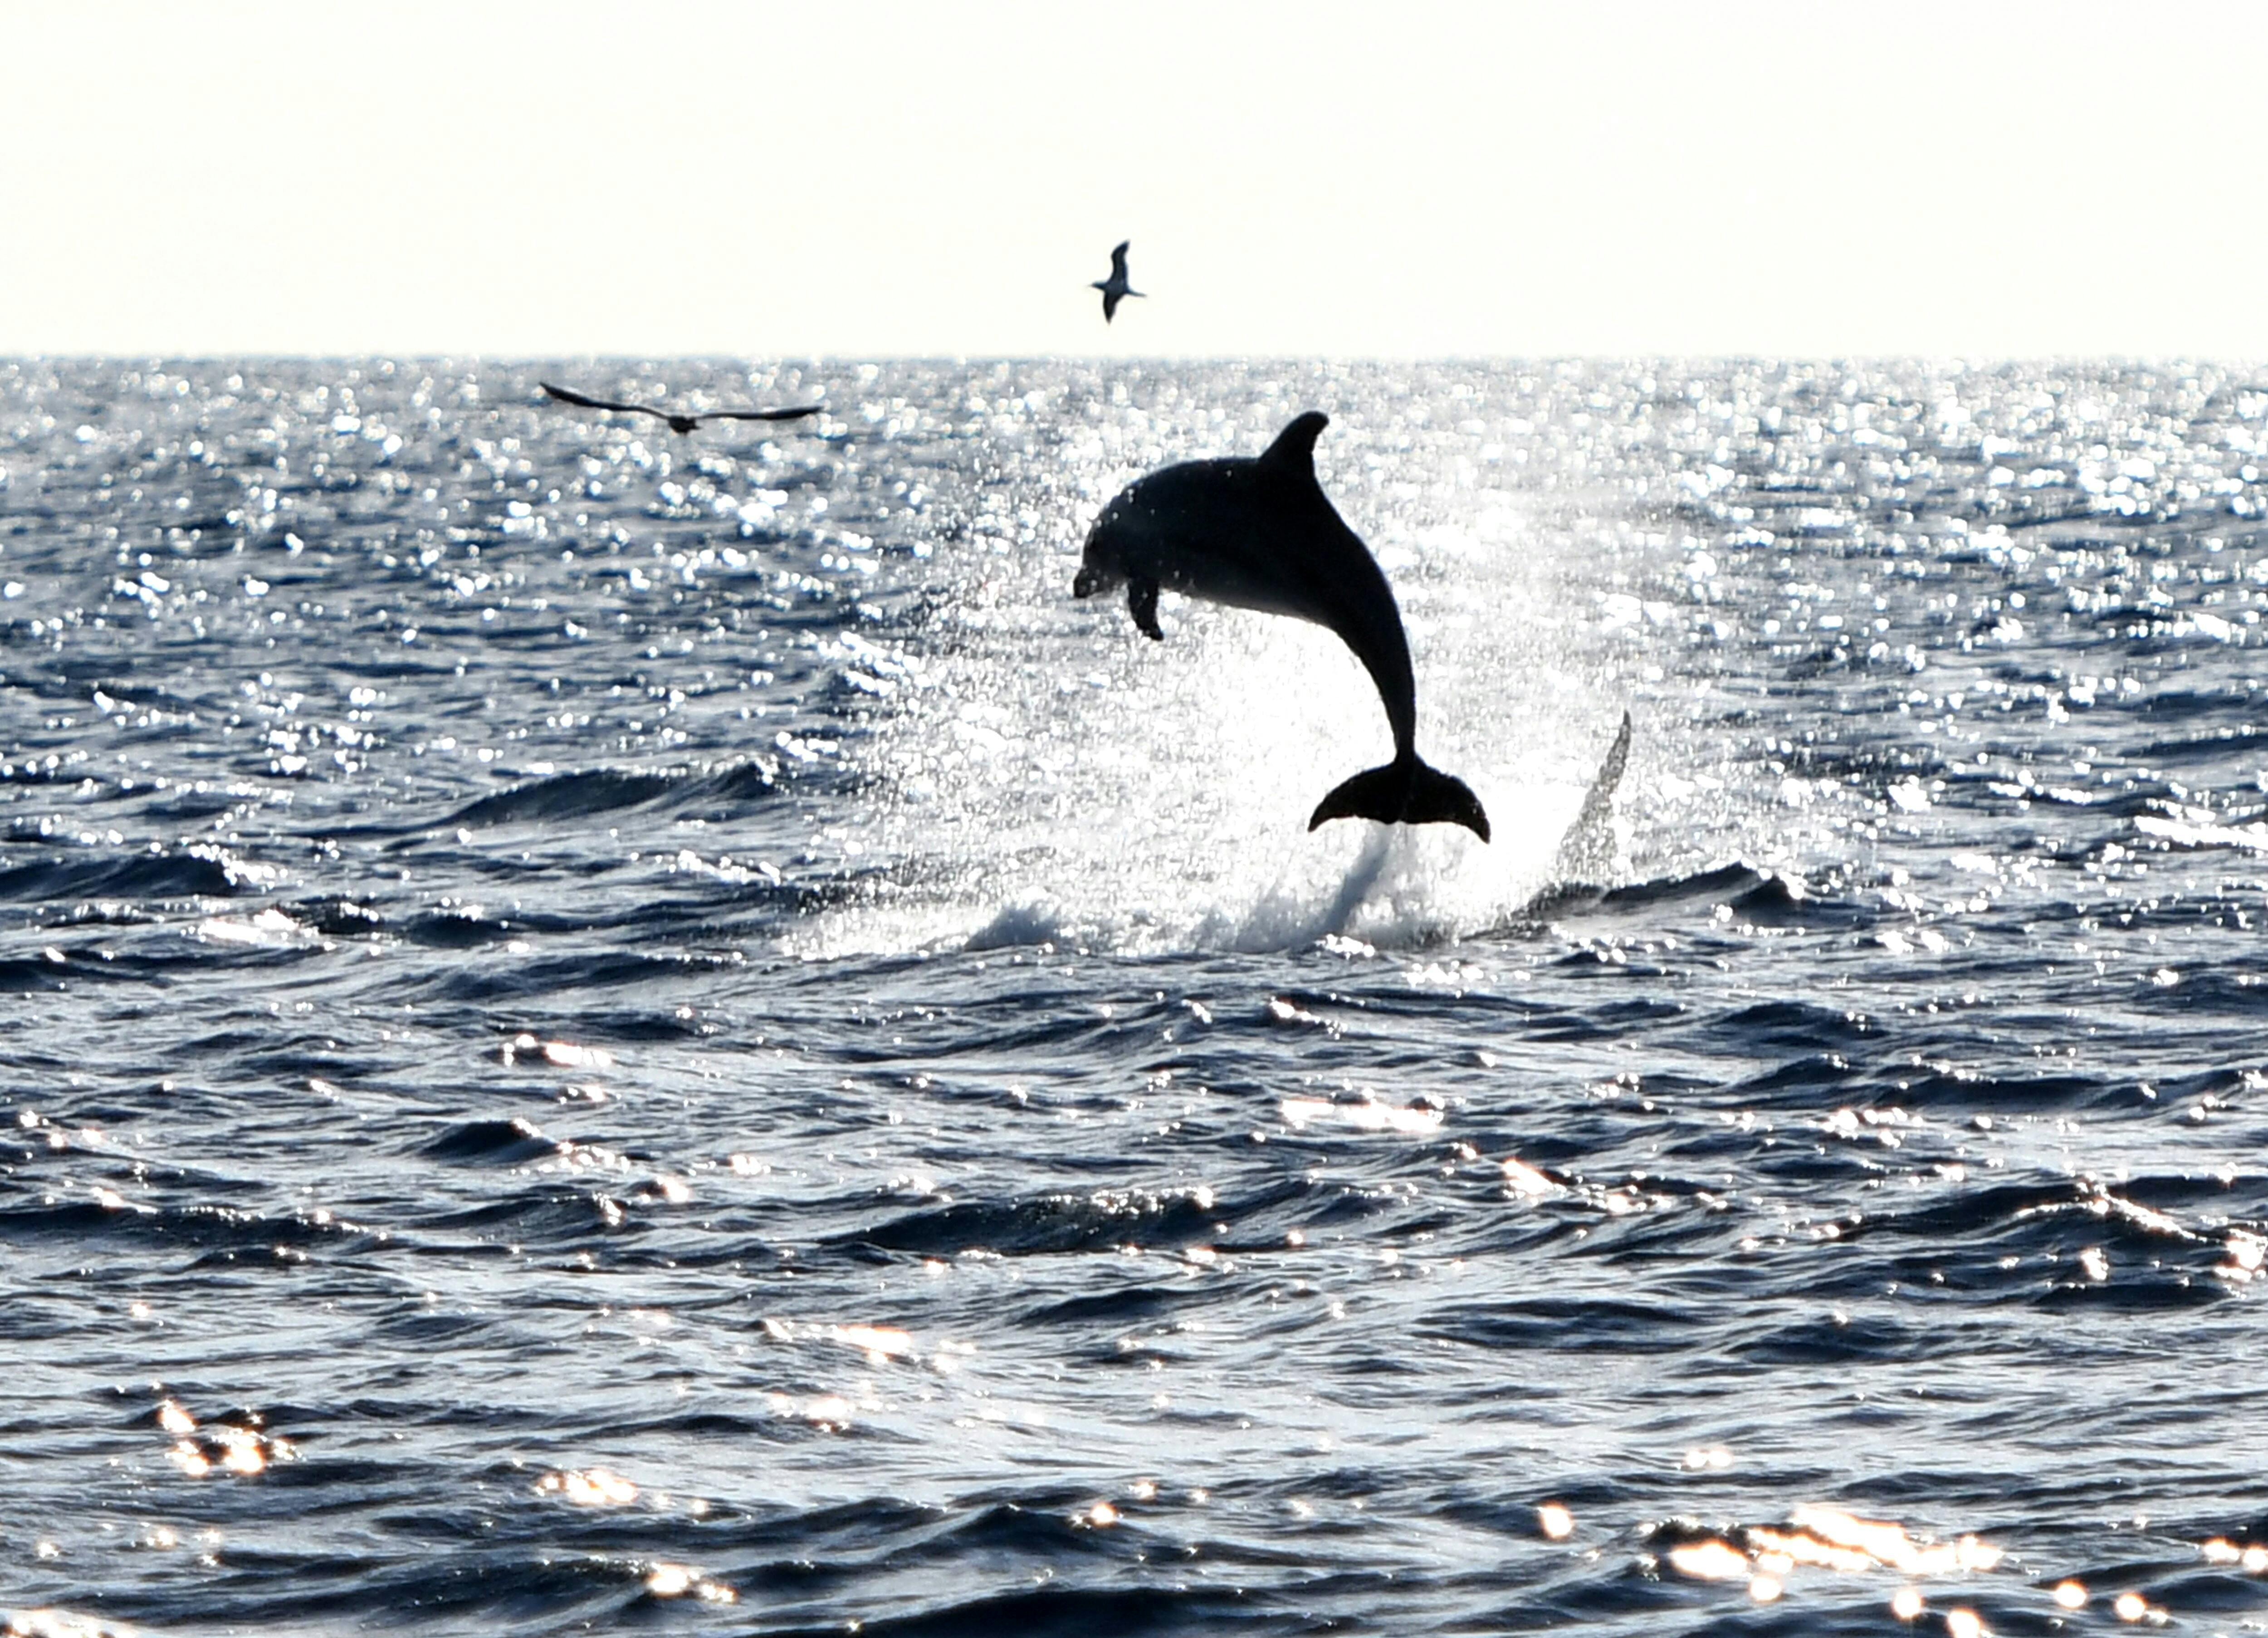 Tour de avistamiento de delfines en el norte de Mallorca en catamarán Robinson con traslado